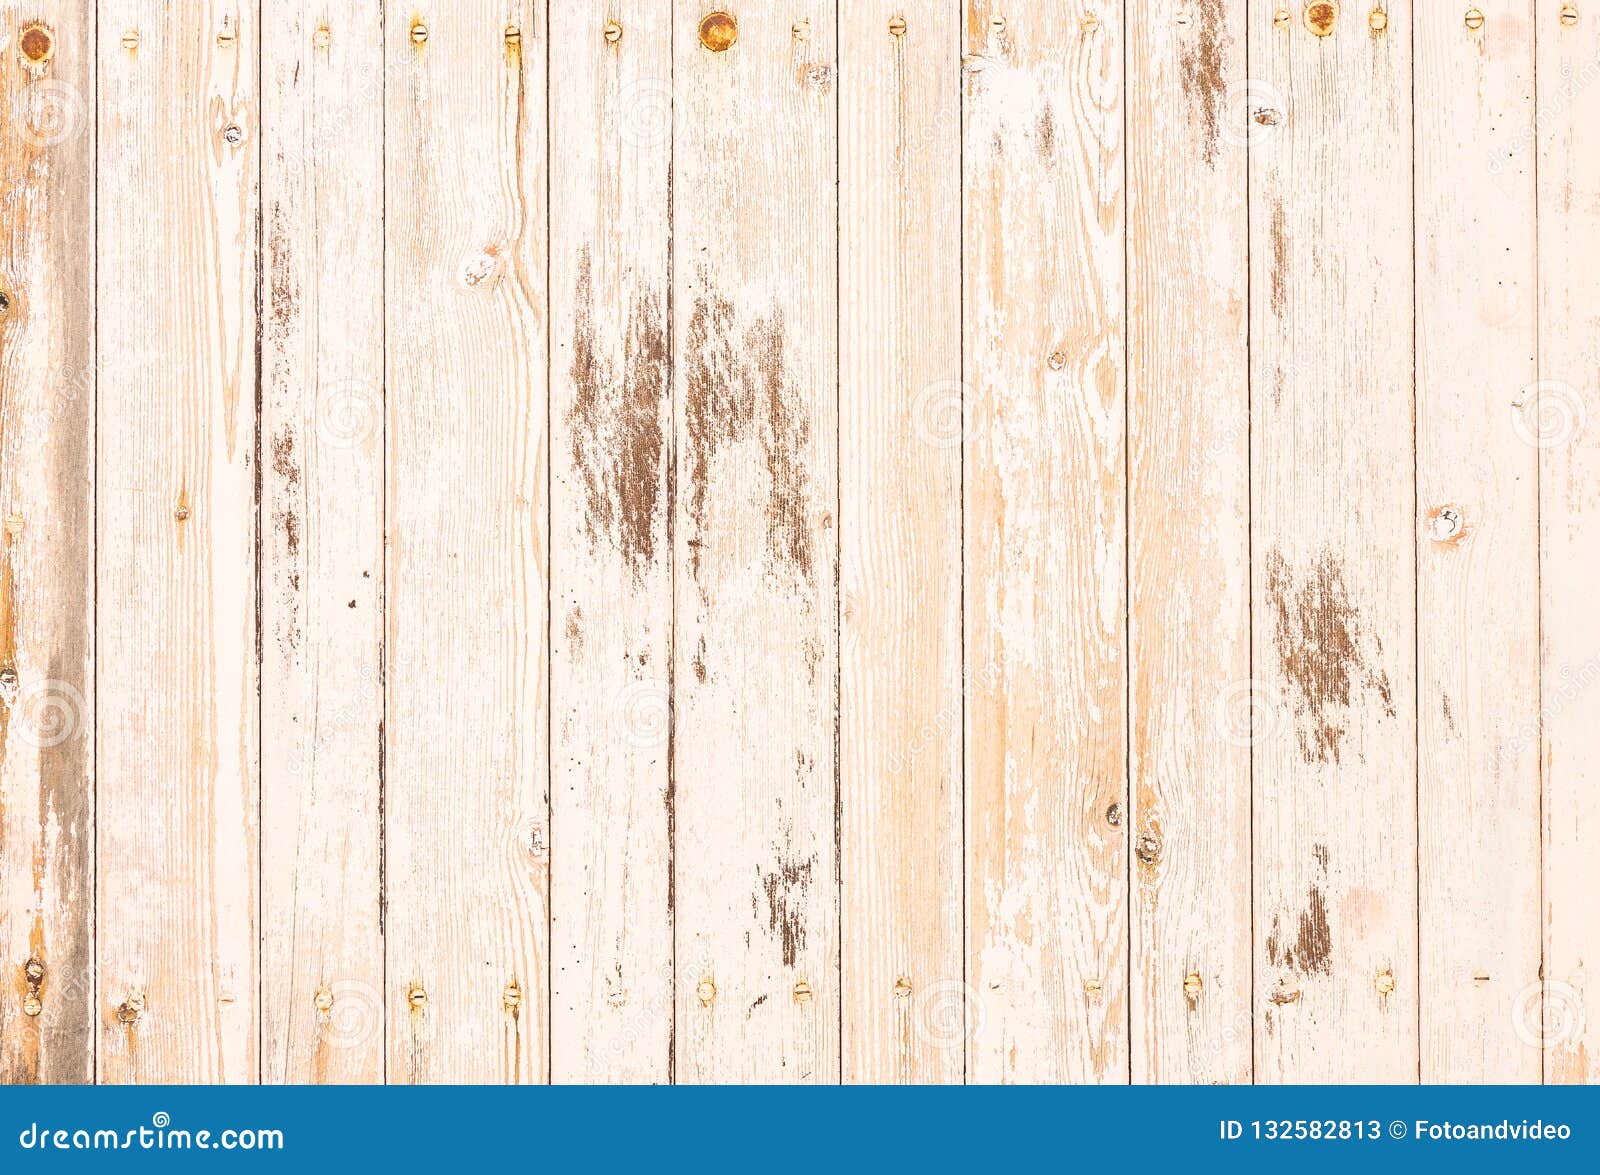 Bức tường gỗ trắng cổ điển - (old white beige wood wall background): Sử dụng bức tường gỗ trắng cổ điển làm nền tương trưng cho màn hình của bạn. Bức tường này đã giúp tôn vinh vẻ đẹp độc đáo và thanh lịch của nó. Hãy tận hưởng bức ảnh tuyệt đẹp này và cảm nhận vẻ đẹp cổ điển.